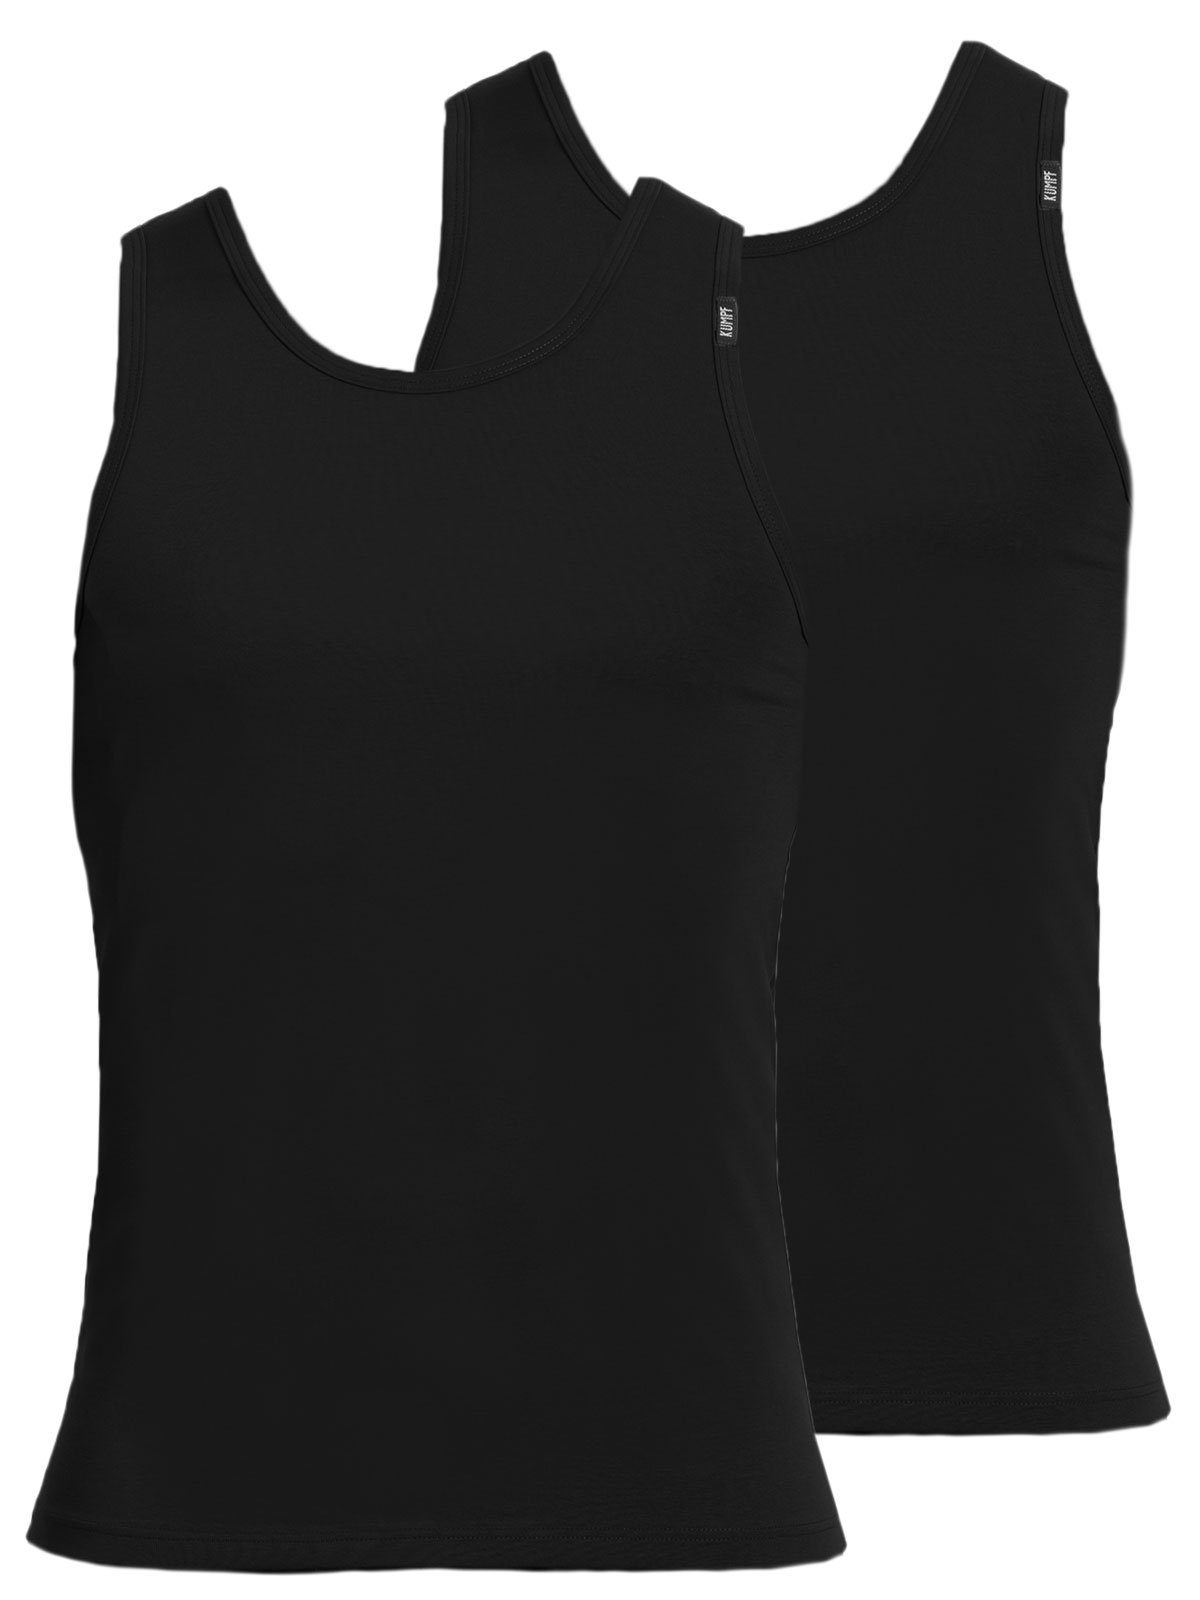 KUMPF Achselhemd 2er Sparpack Herren Unterhemd Bio Cotton (Spar-Set, 2-St) hohe Markenqualität schwarz